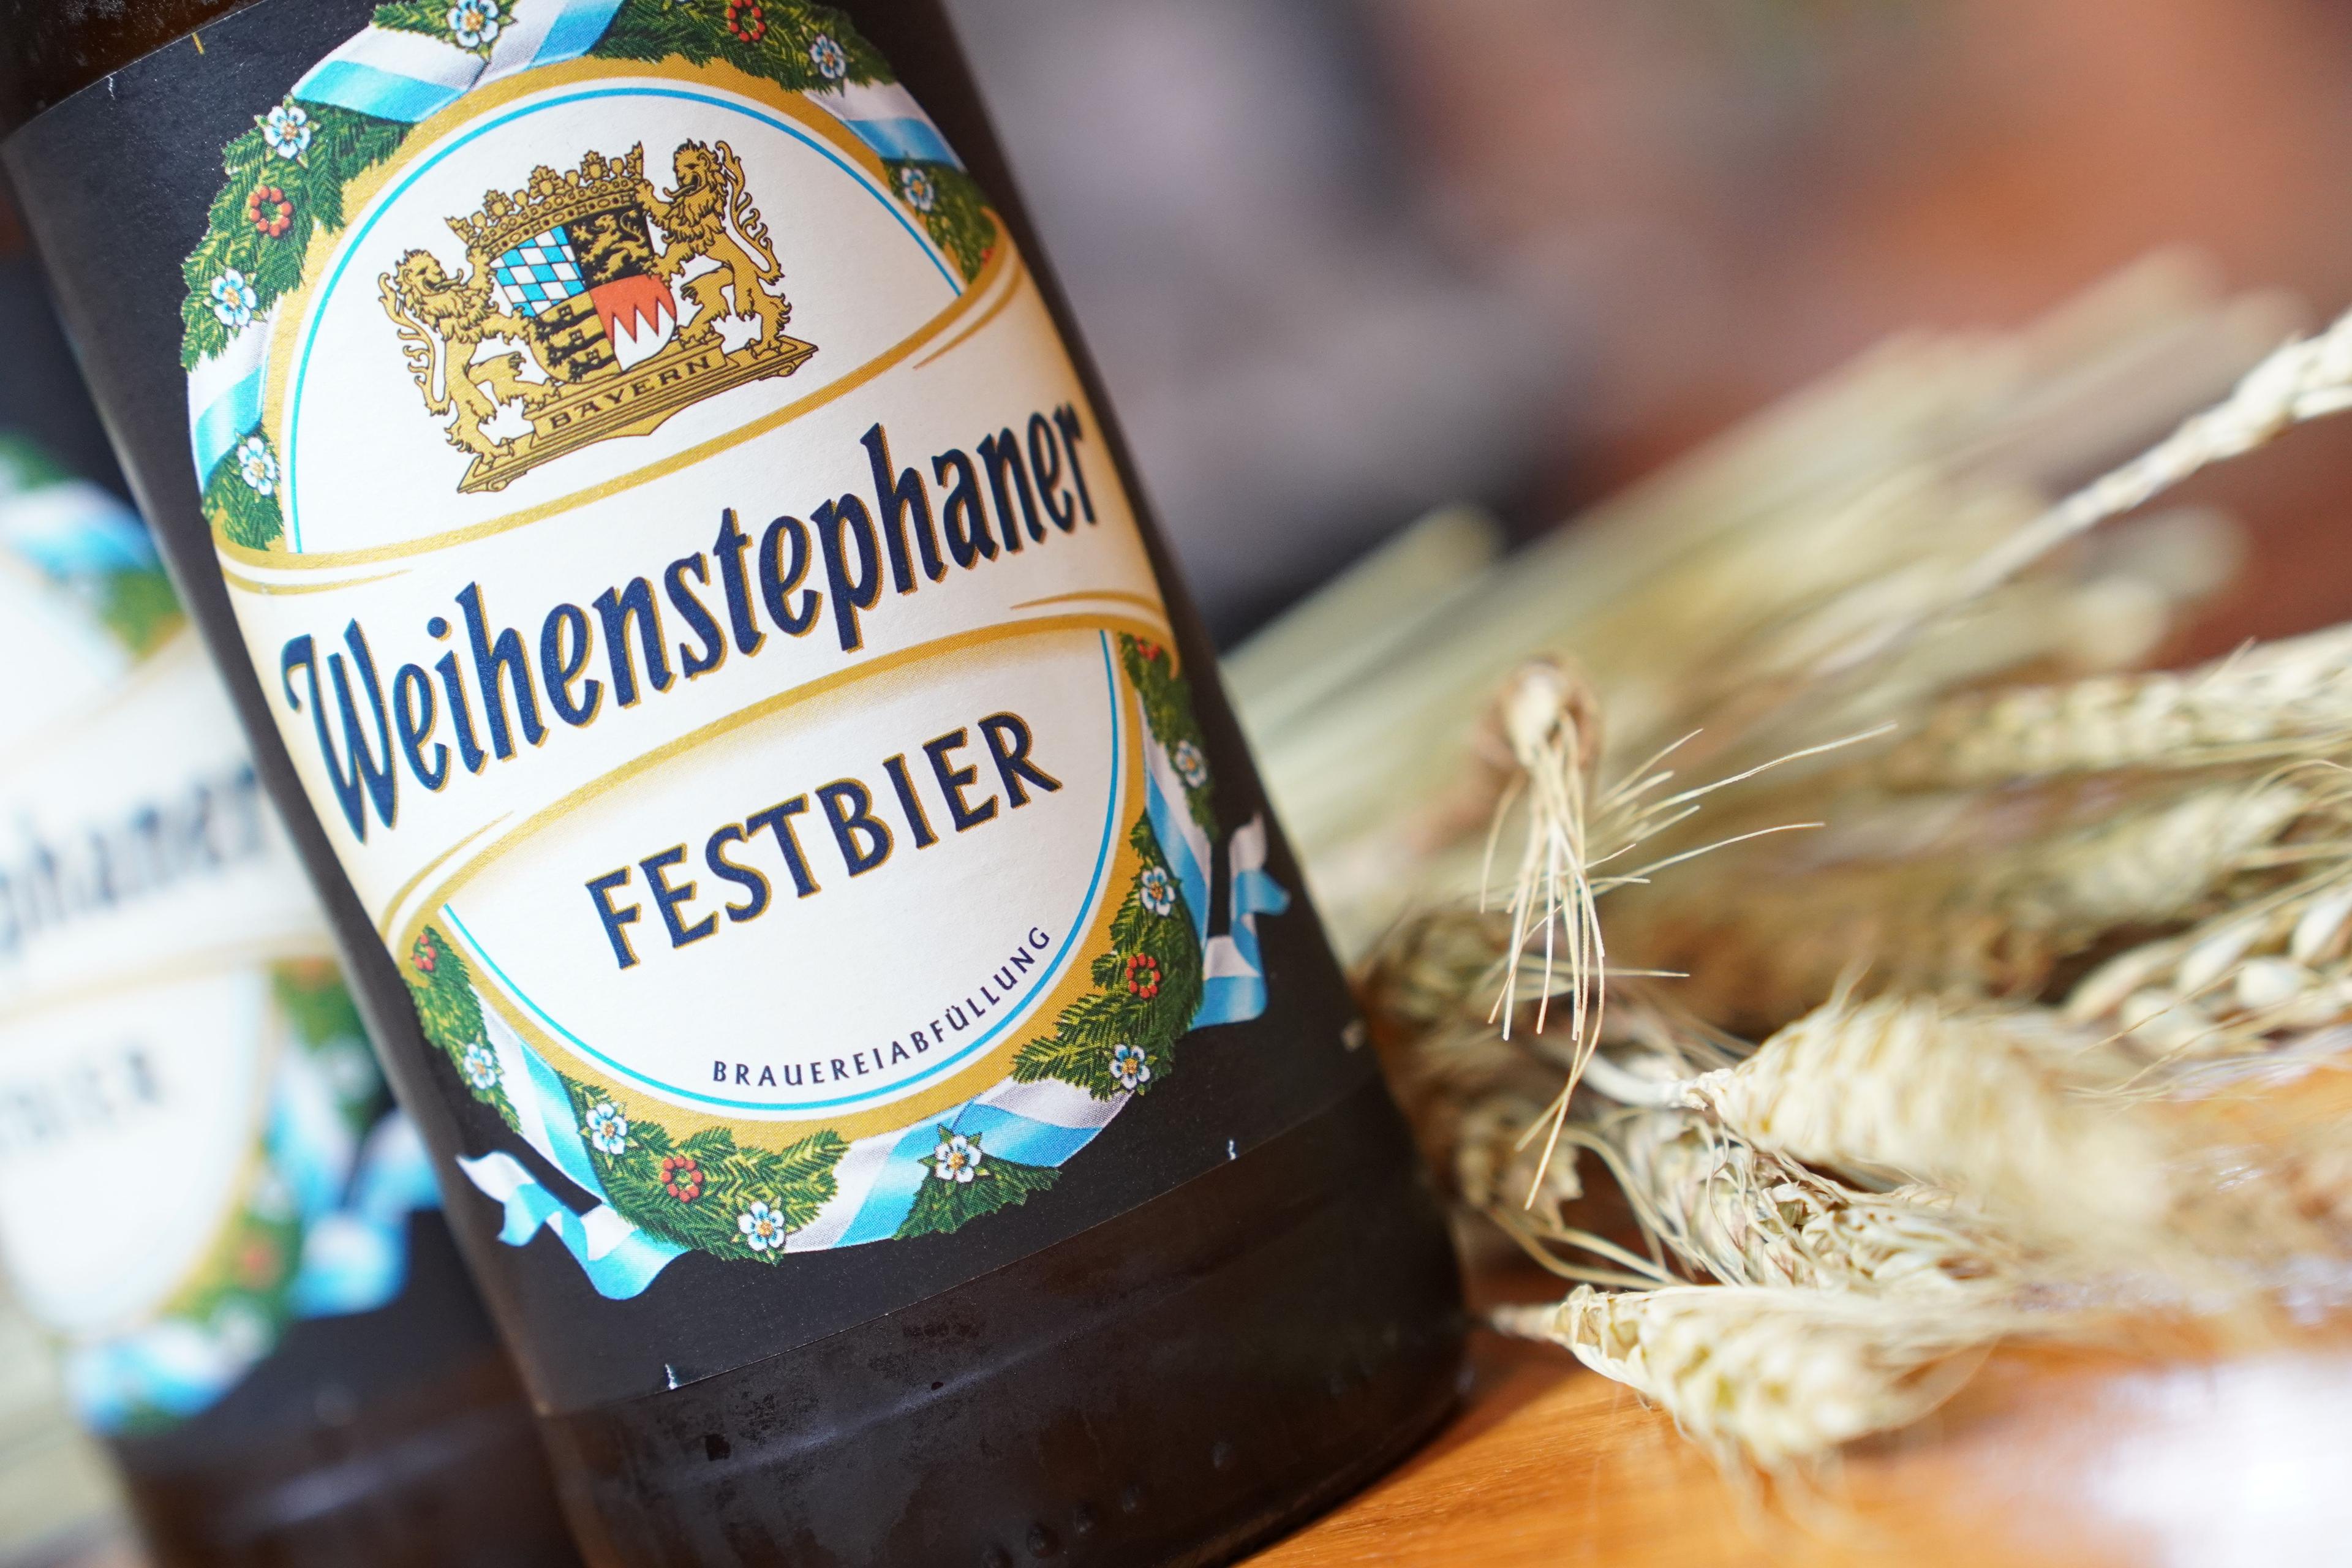 A Weihenstephan classic: The Festbier.